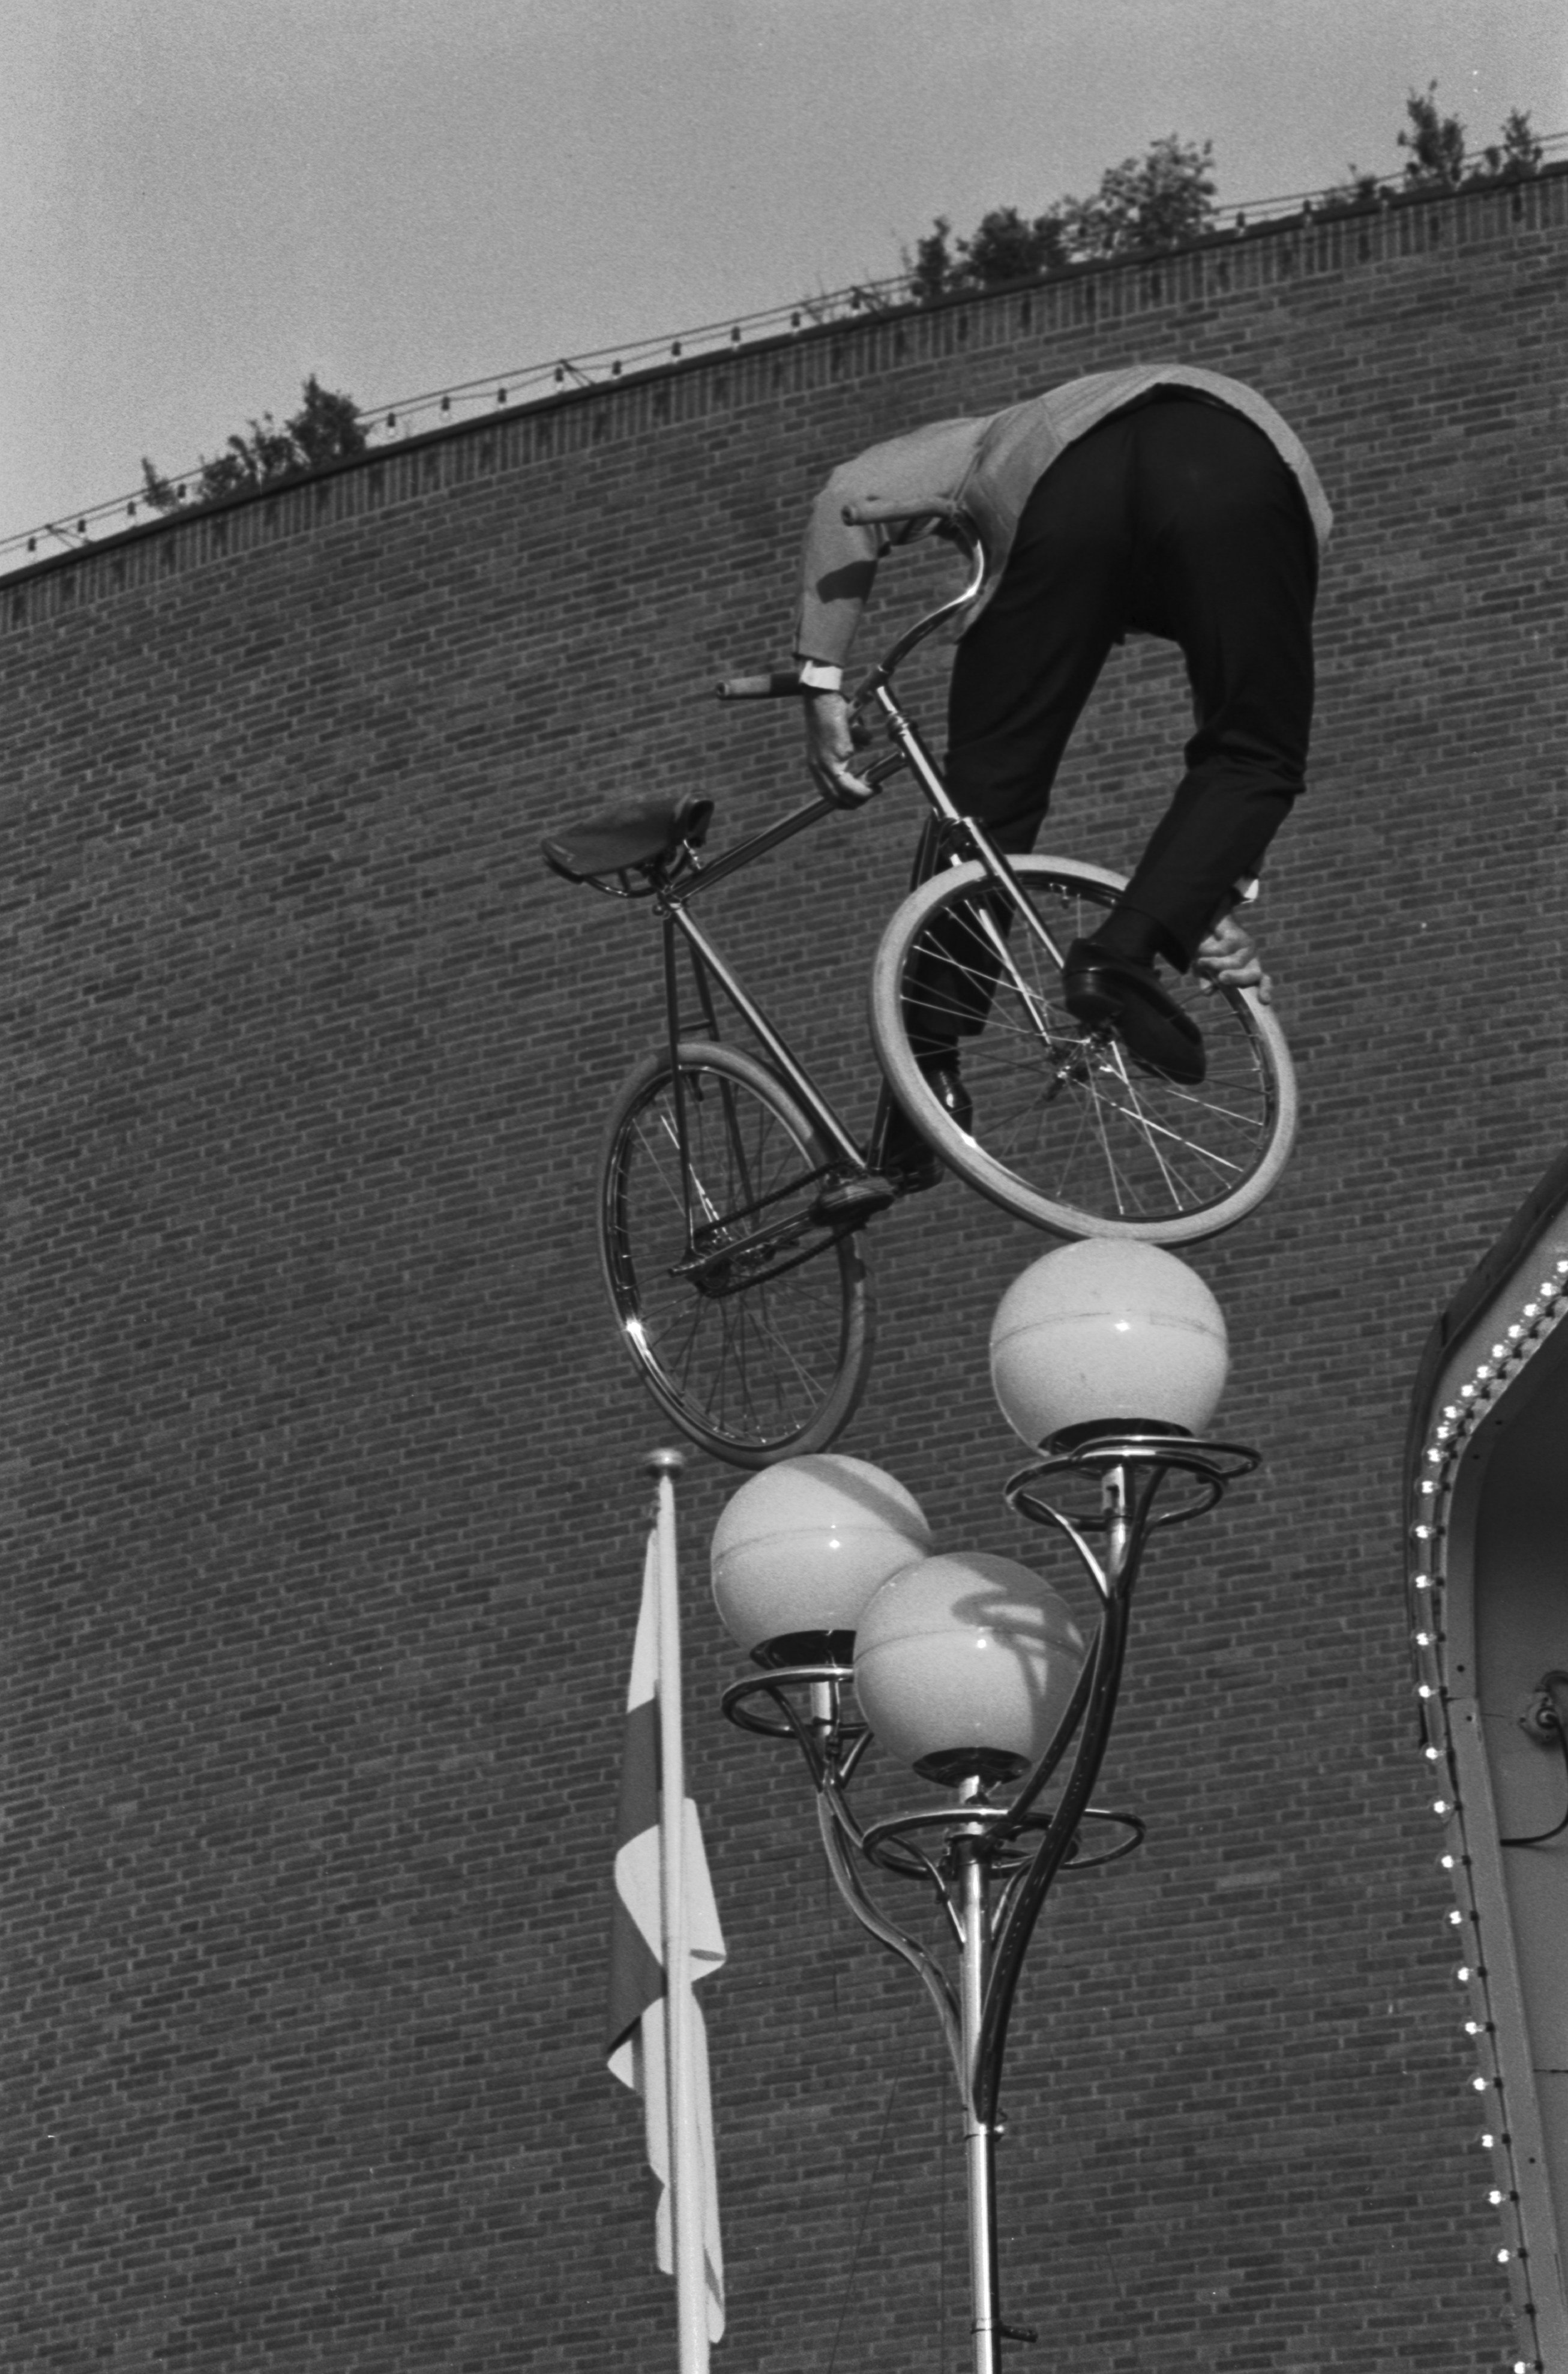 Linnanmäki. Tasapainotaiteilija esiintymässä polkupyörineen Linnanmäen huvipuiston ulkoilmalavalla.